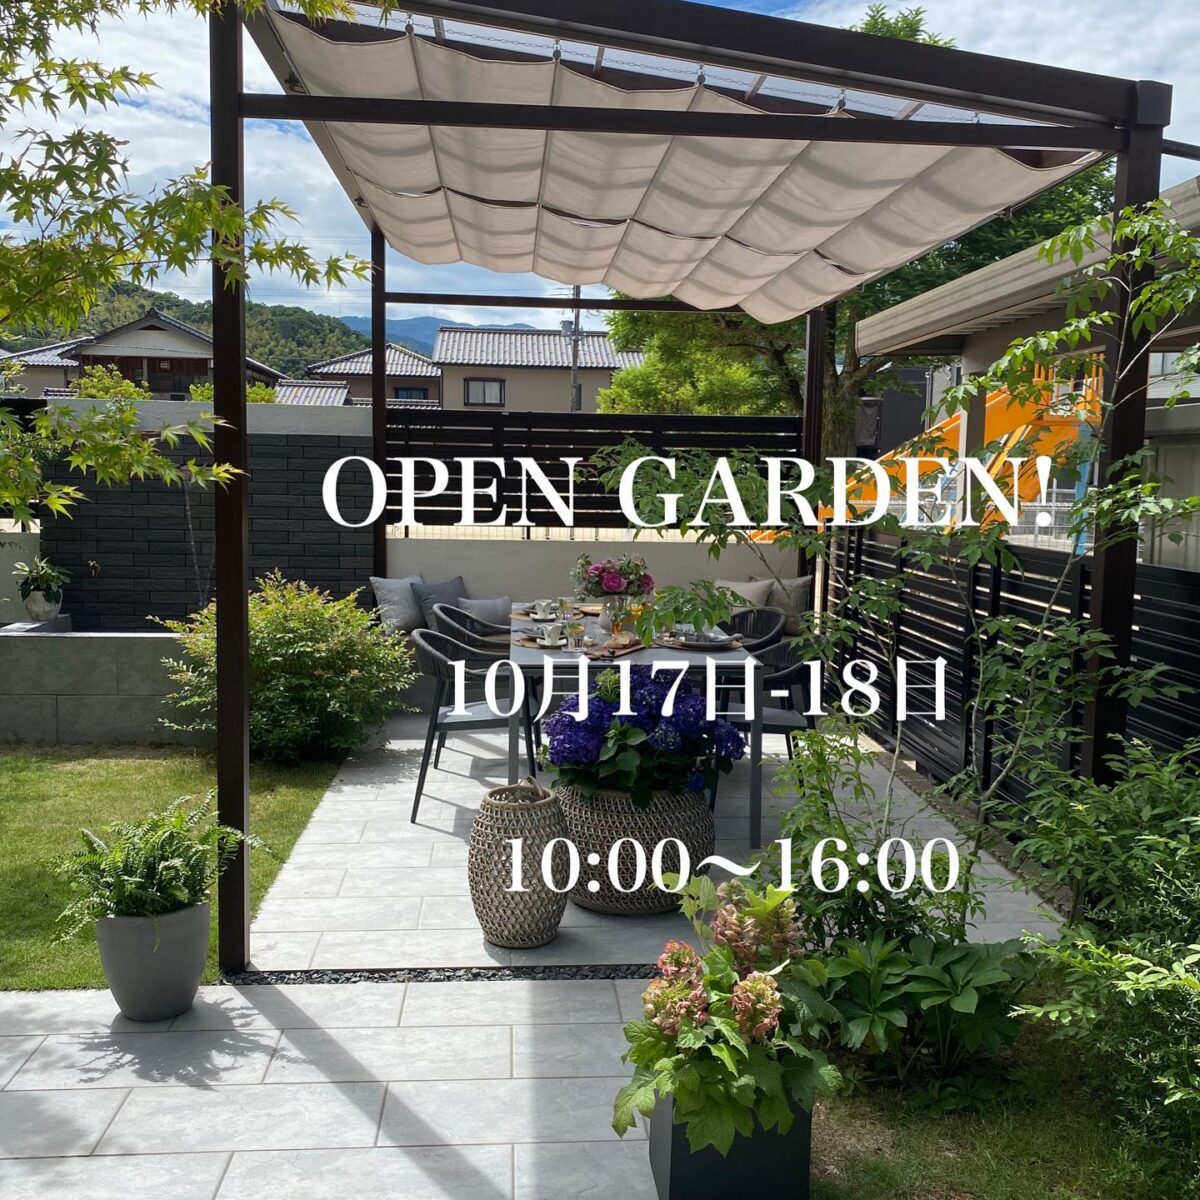 オープンガーデンのお知らせ！  10月17日と18日の2日間、お客様のご厚意によりオープンガーデンを行います。お庭作りに興味のある方、外構を検討されている方、ルーセントが作った庭を見てみたい方、ぜひこの機会に実際のお庭をご覧下さい。  ◆緑あふれるオープンガーデン  日時:10月17日-18日　10:00-16:00
住所:舞鶴市　　詳しい住所はご予約の際にお伝えいたします。
予約:必要　　1日１０組限定
1時間２組までのご案内となります。ご希望の時間がある方は早めにご予約をお願いいたします。
お問い合わせ:0120-37-1728